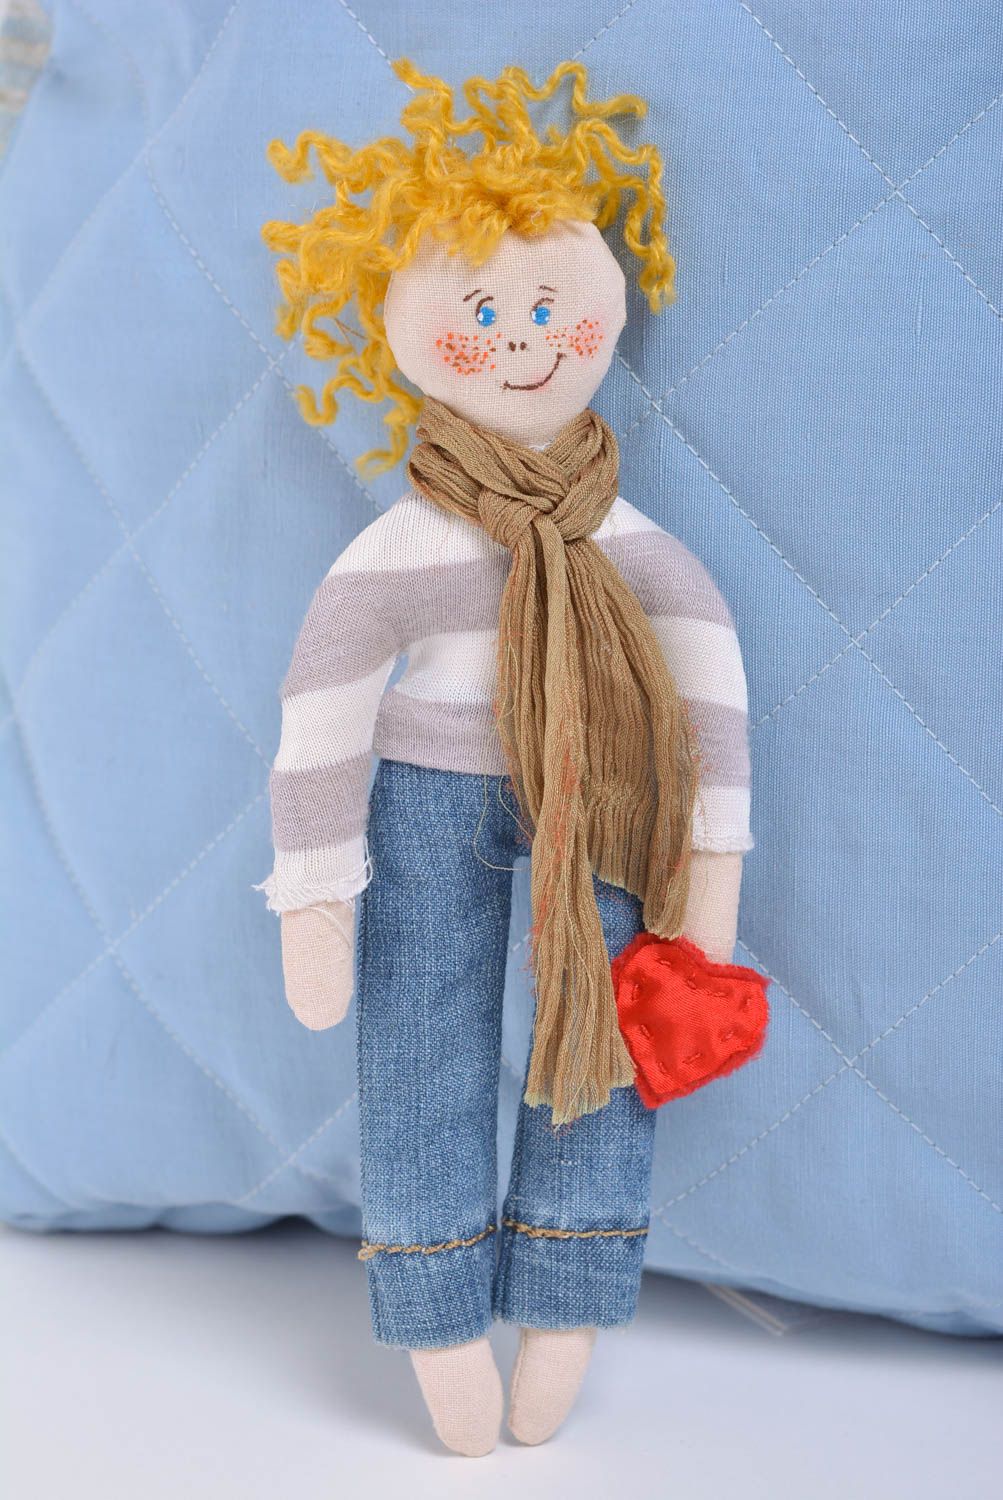 Spielzeug Puppe aus Stoff für Haus Interieur Junge Künstlerarbeit handmade foto 1